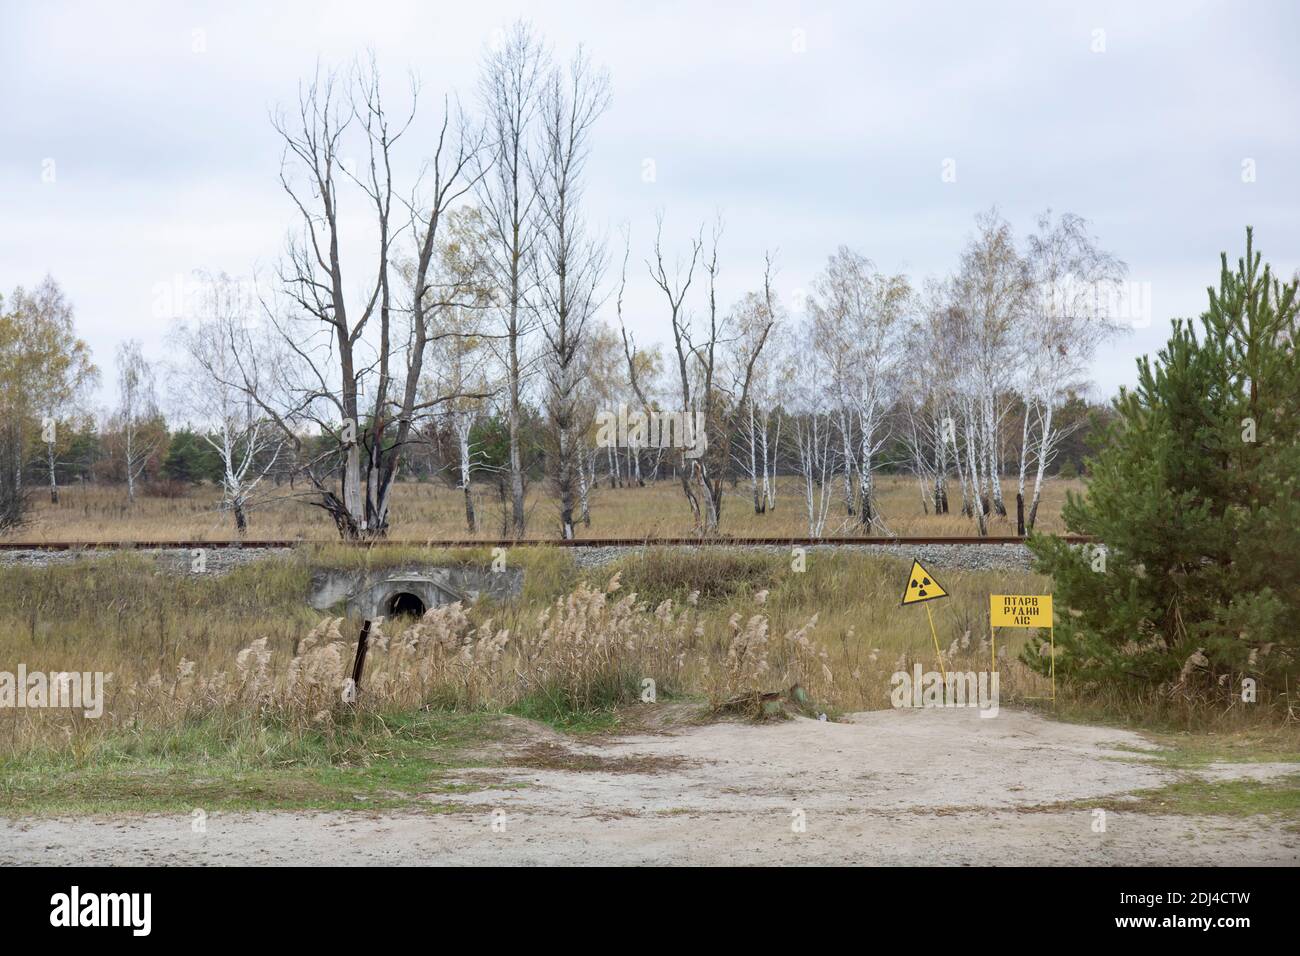 Pripyat, Tschernobyl-Sperrgebiet, Ukraine - Gefahrenschilder in der Nähe des Roten Waldes, einer hochradioaktiven Stelle im Tschernobyl-Sperrgebiet in der Nähe des Gespenstes Stockfoto